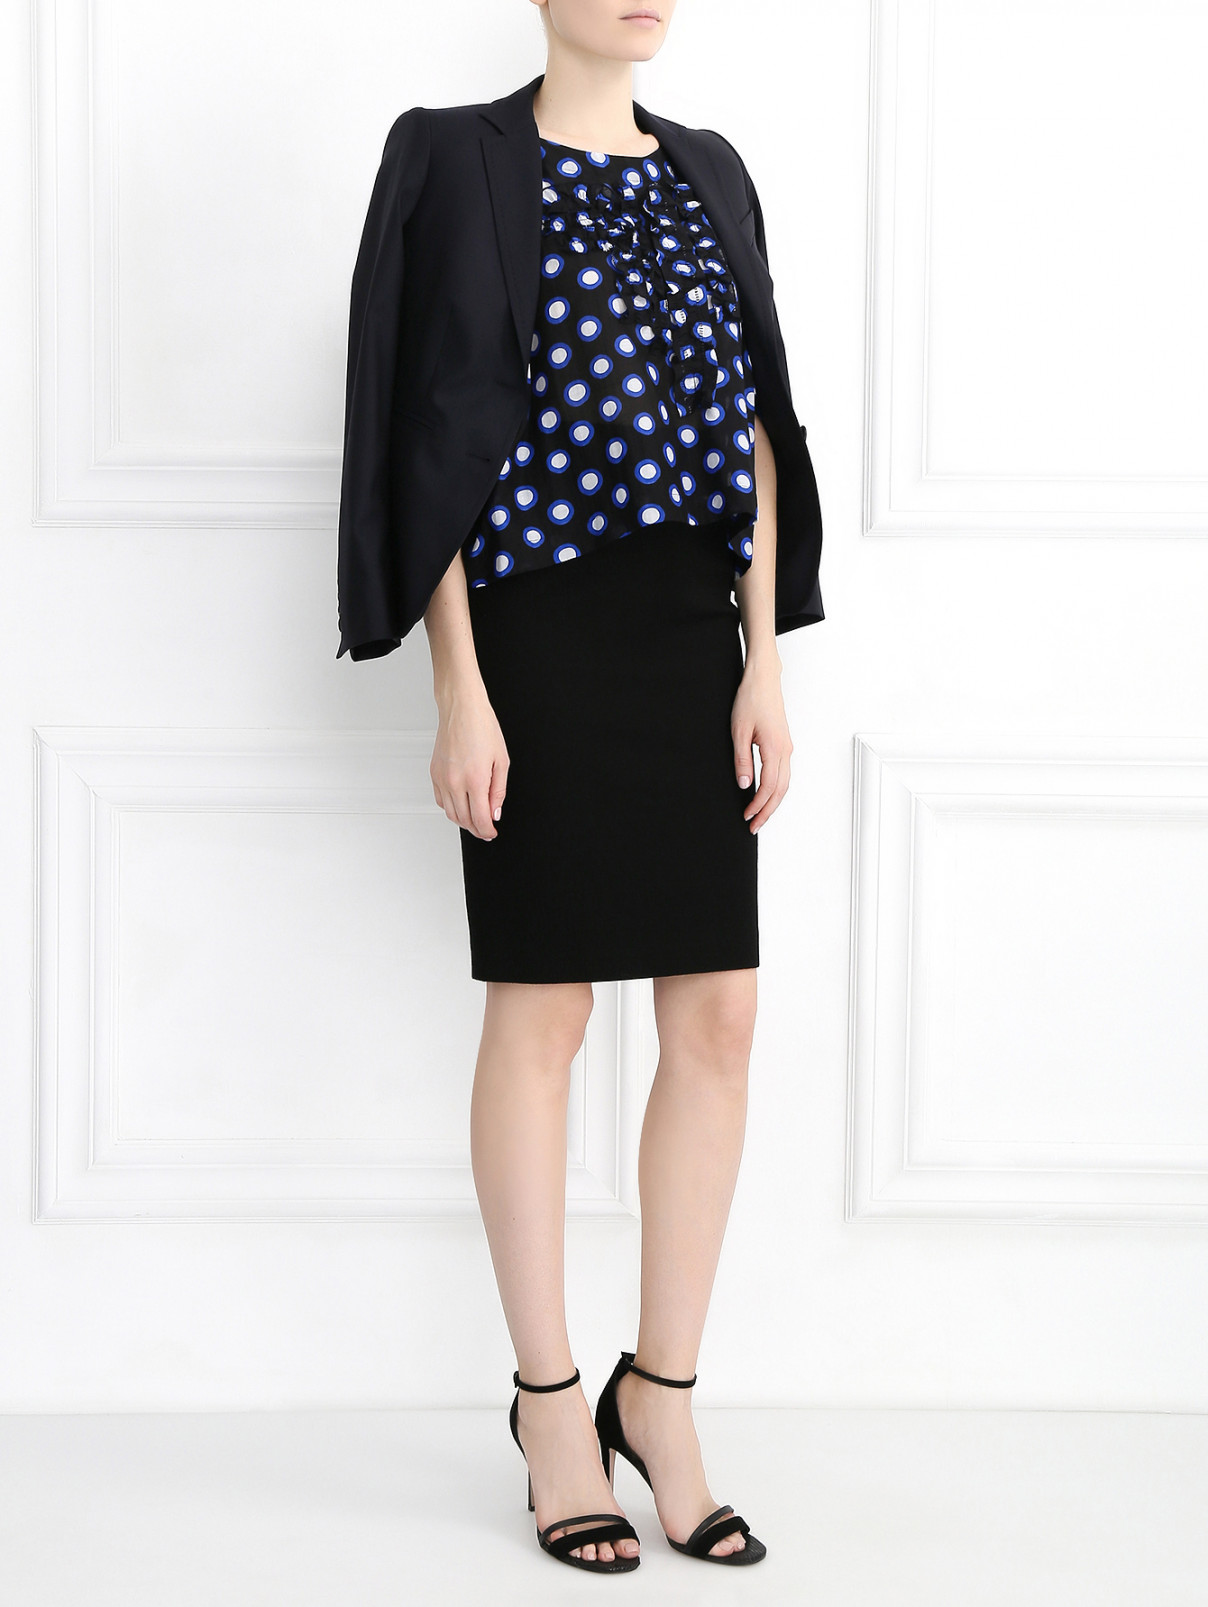 Блуза из хлопка и шелка с узором "горох" Moschino Boutique  –  Модель Общий вид  – Цвет:  Черный